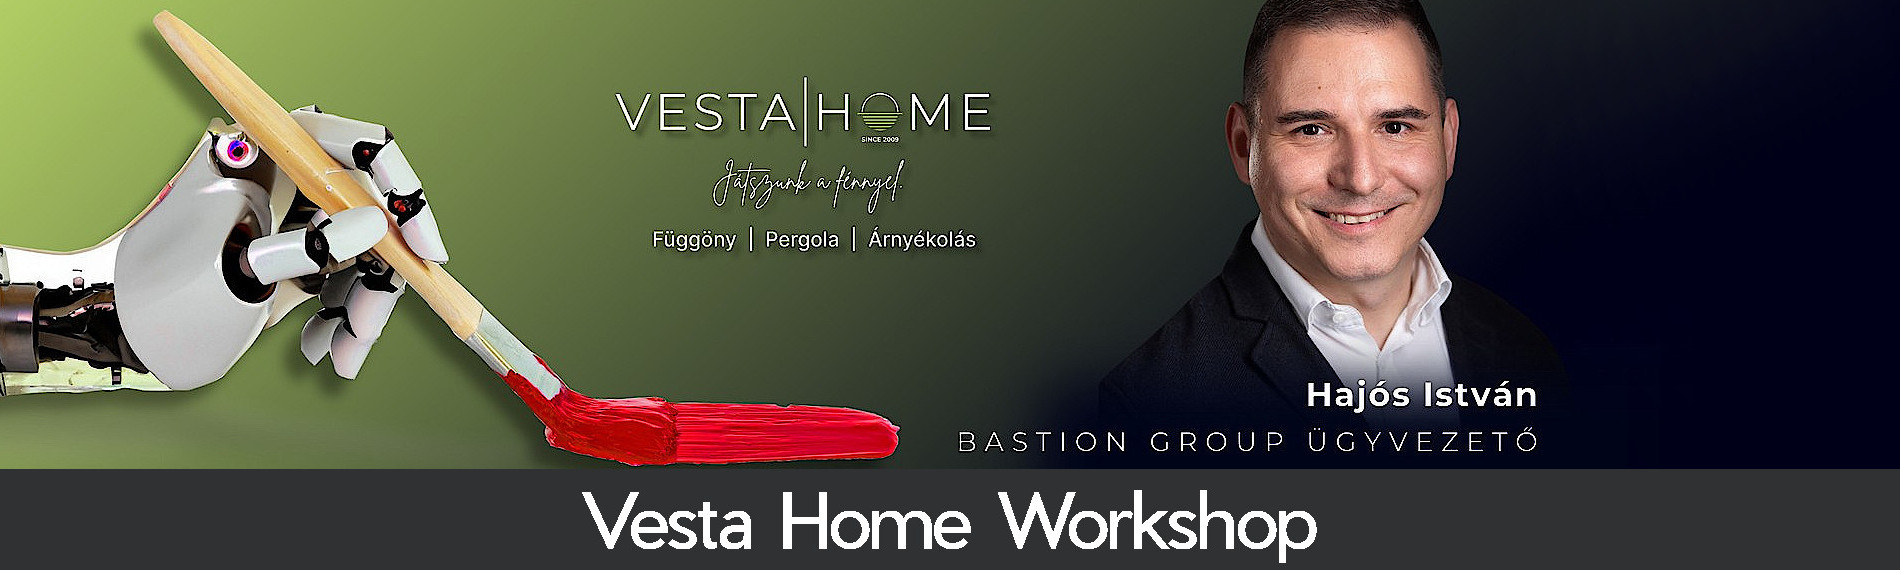 Vesta Home Workshop